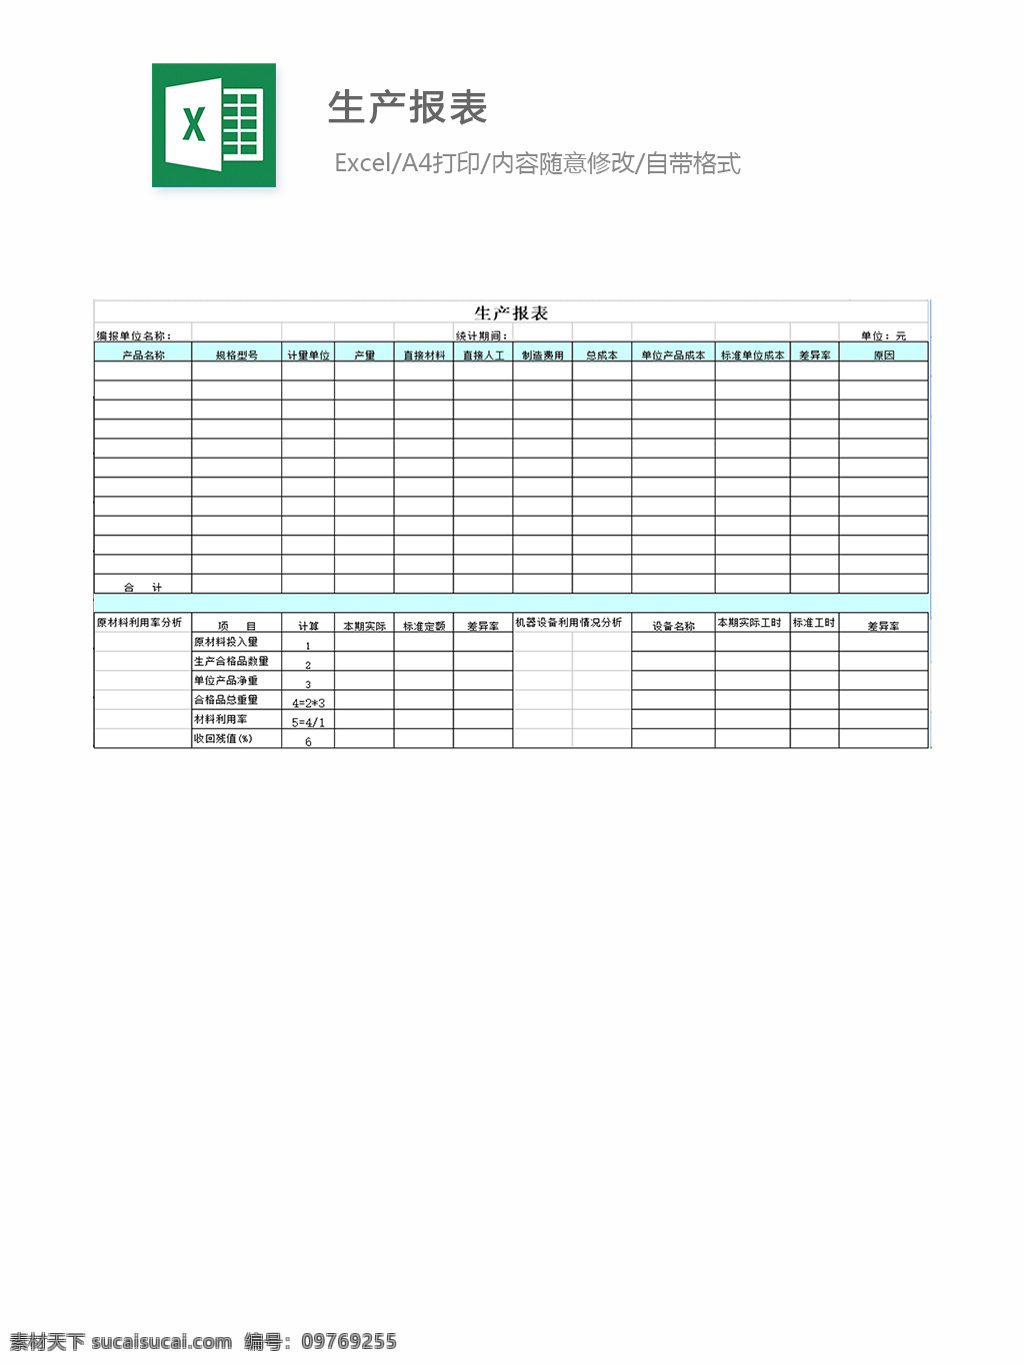 表格 表格模板 表格设计 图表 生产单 生产报表